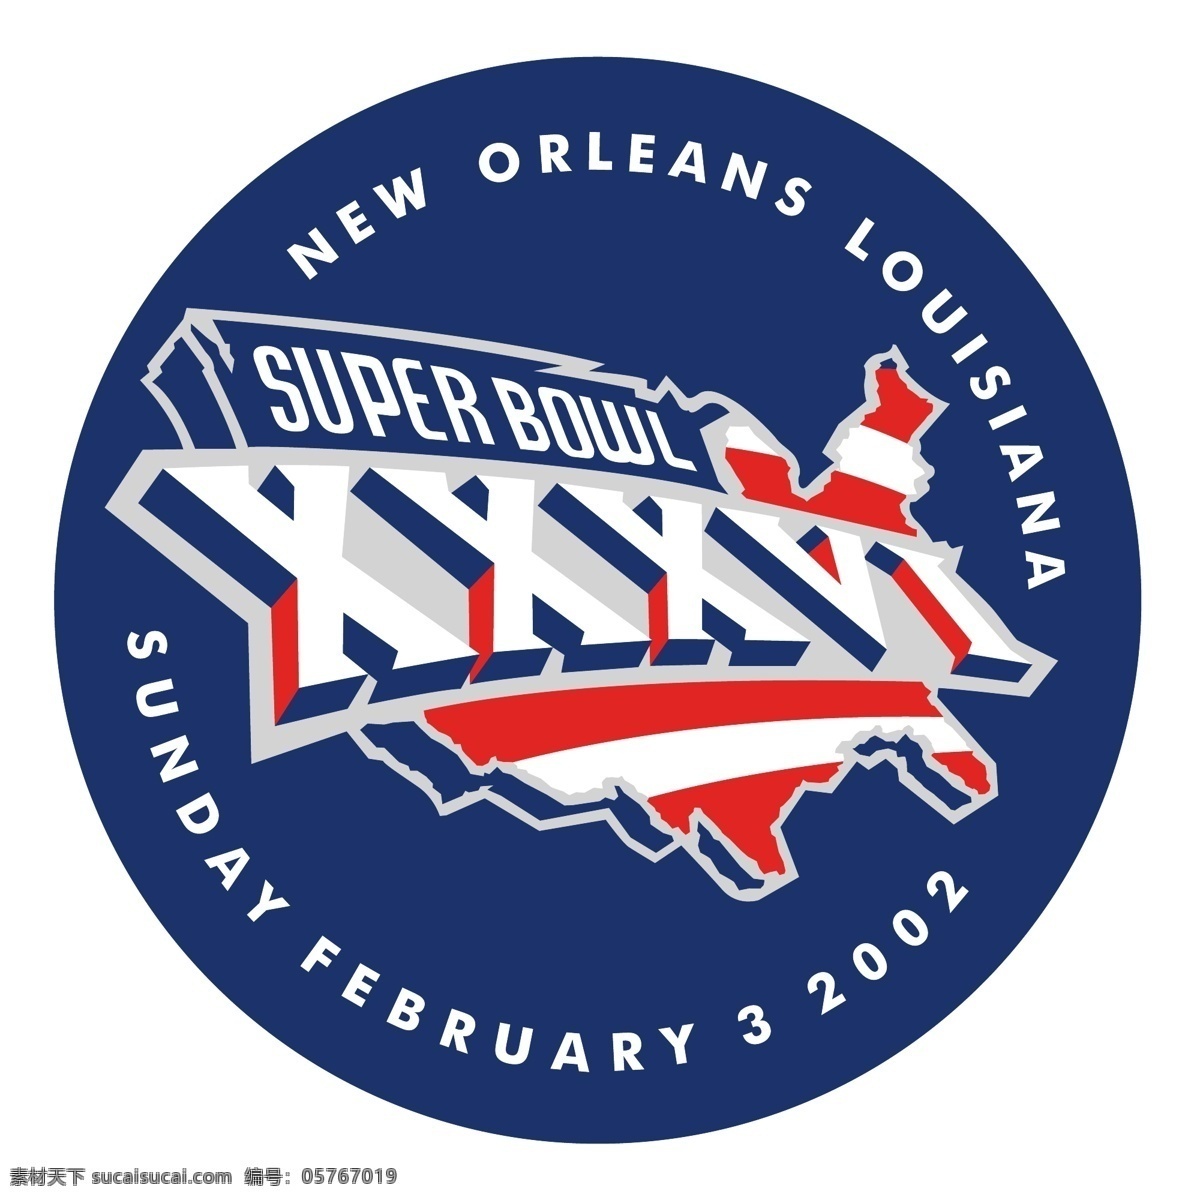 超级 碗 2002 矢量标志下载 免费矢量标识 商标 品牌标识 标识 矢量 免费 品牌 公司 白色